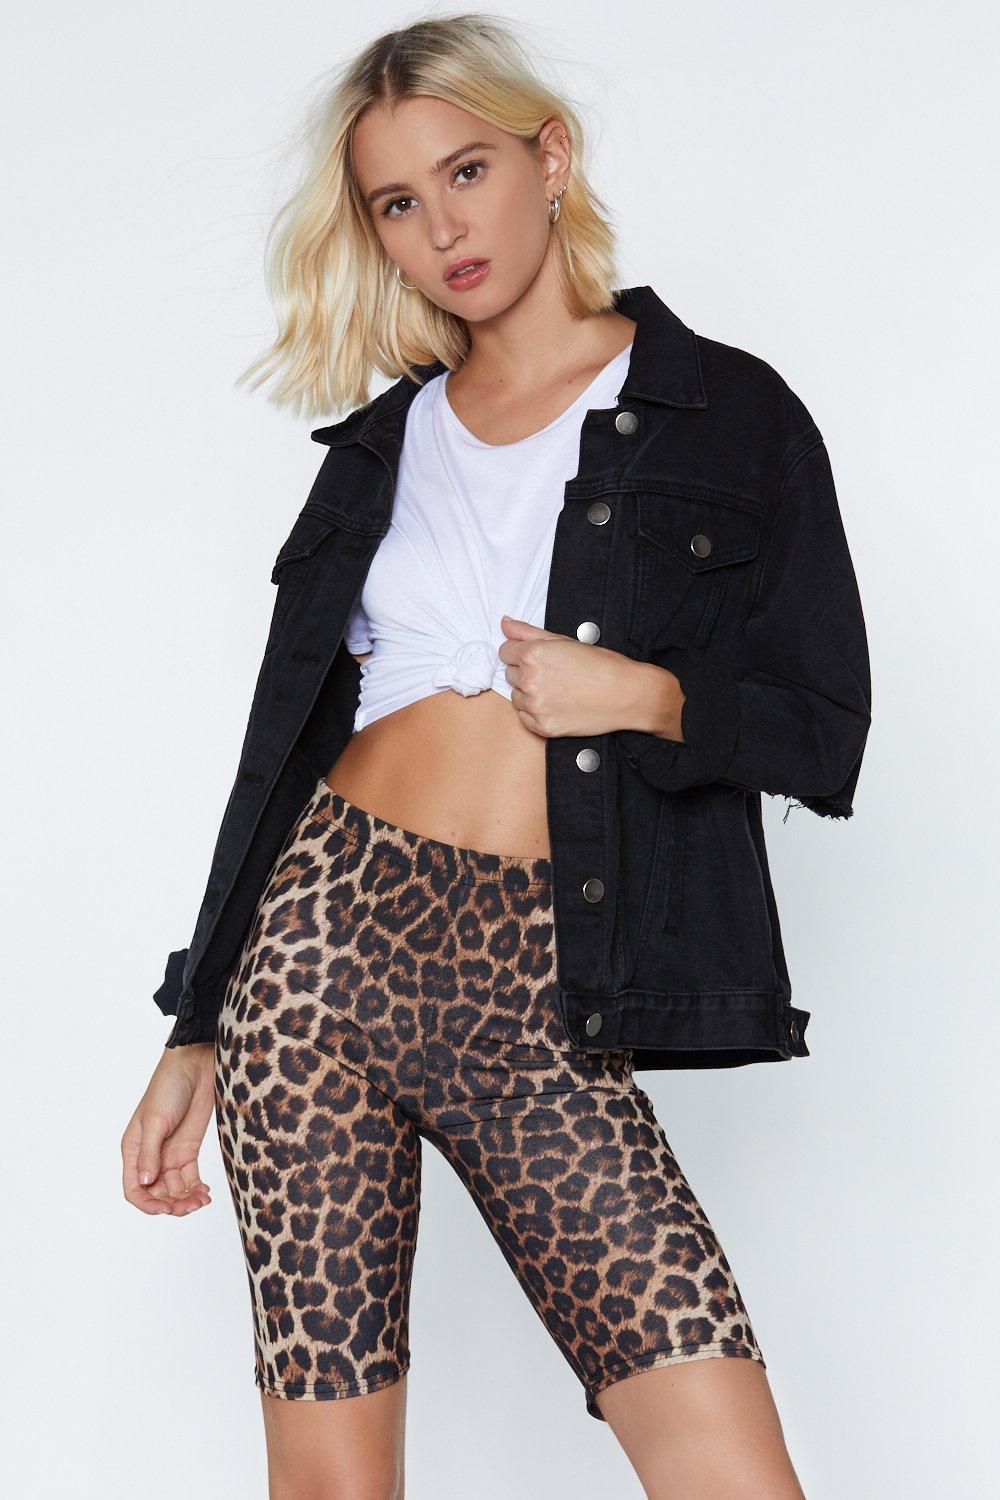 plus size leopard print biker shorts